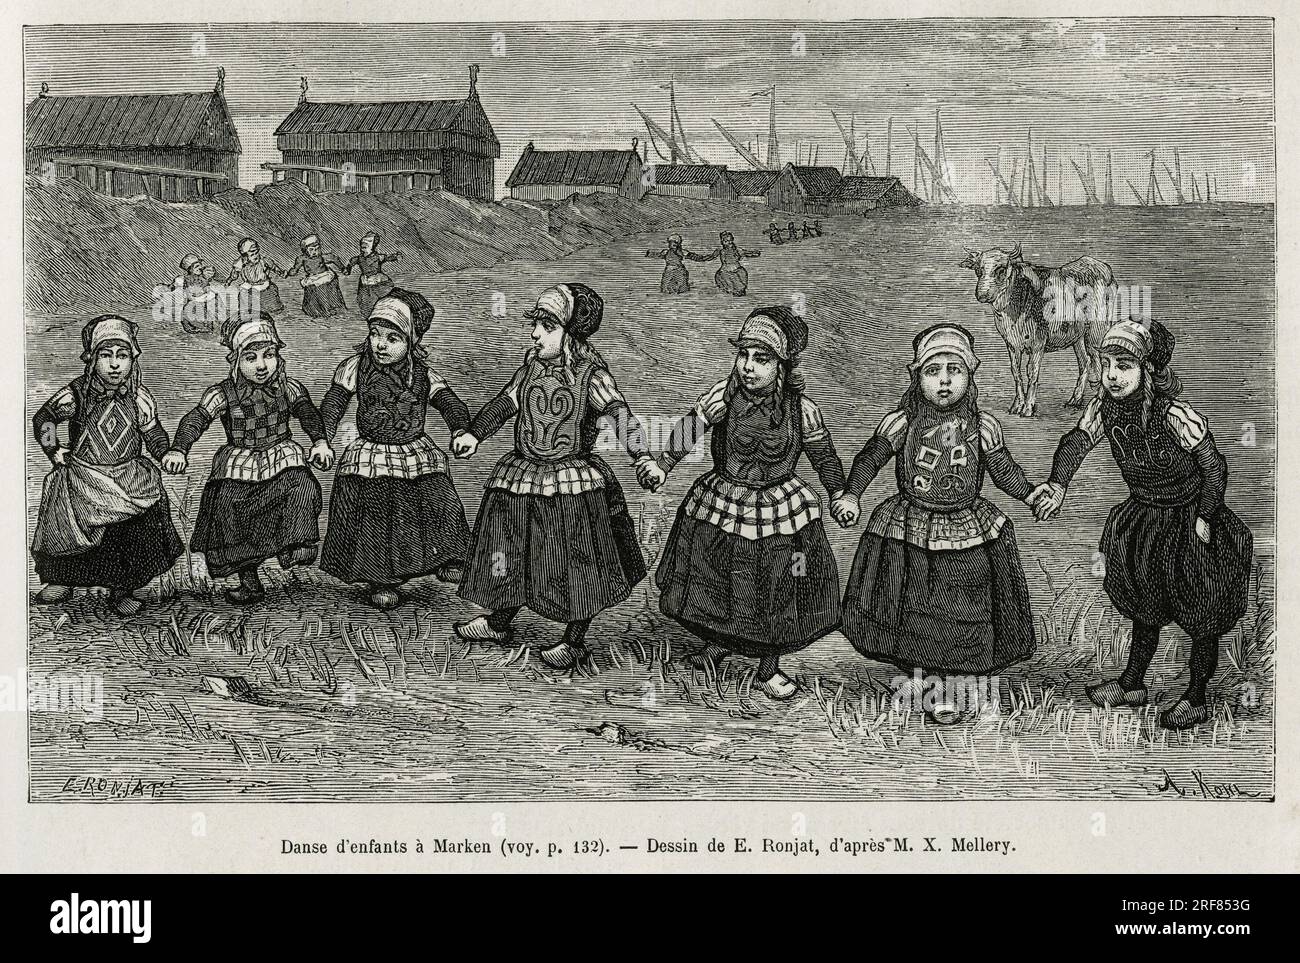 Danses d'enfants a Marken ( Pays Bas), gravure d'apres un dessin de E.Ronjat, pour illustrer le recit la Neerlande, par Charles de Coster, en 1878, publie dans le tour du monde, sous la direction d'Edouard Charton, 1880, Paris. Stock Photo